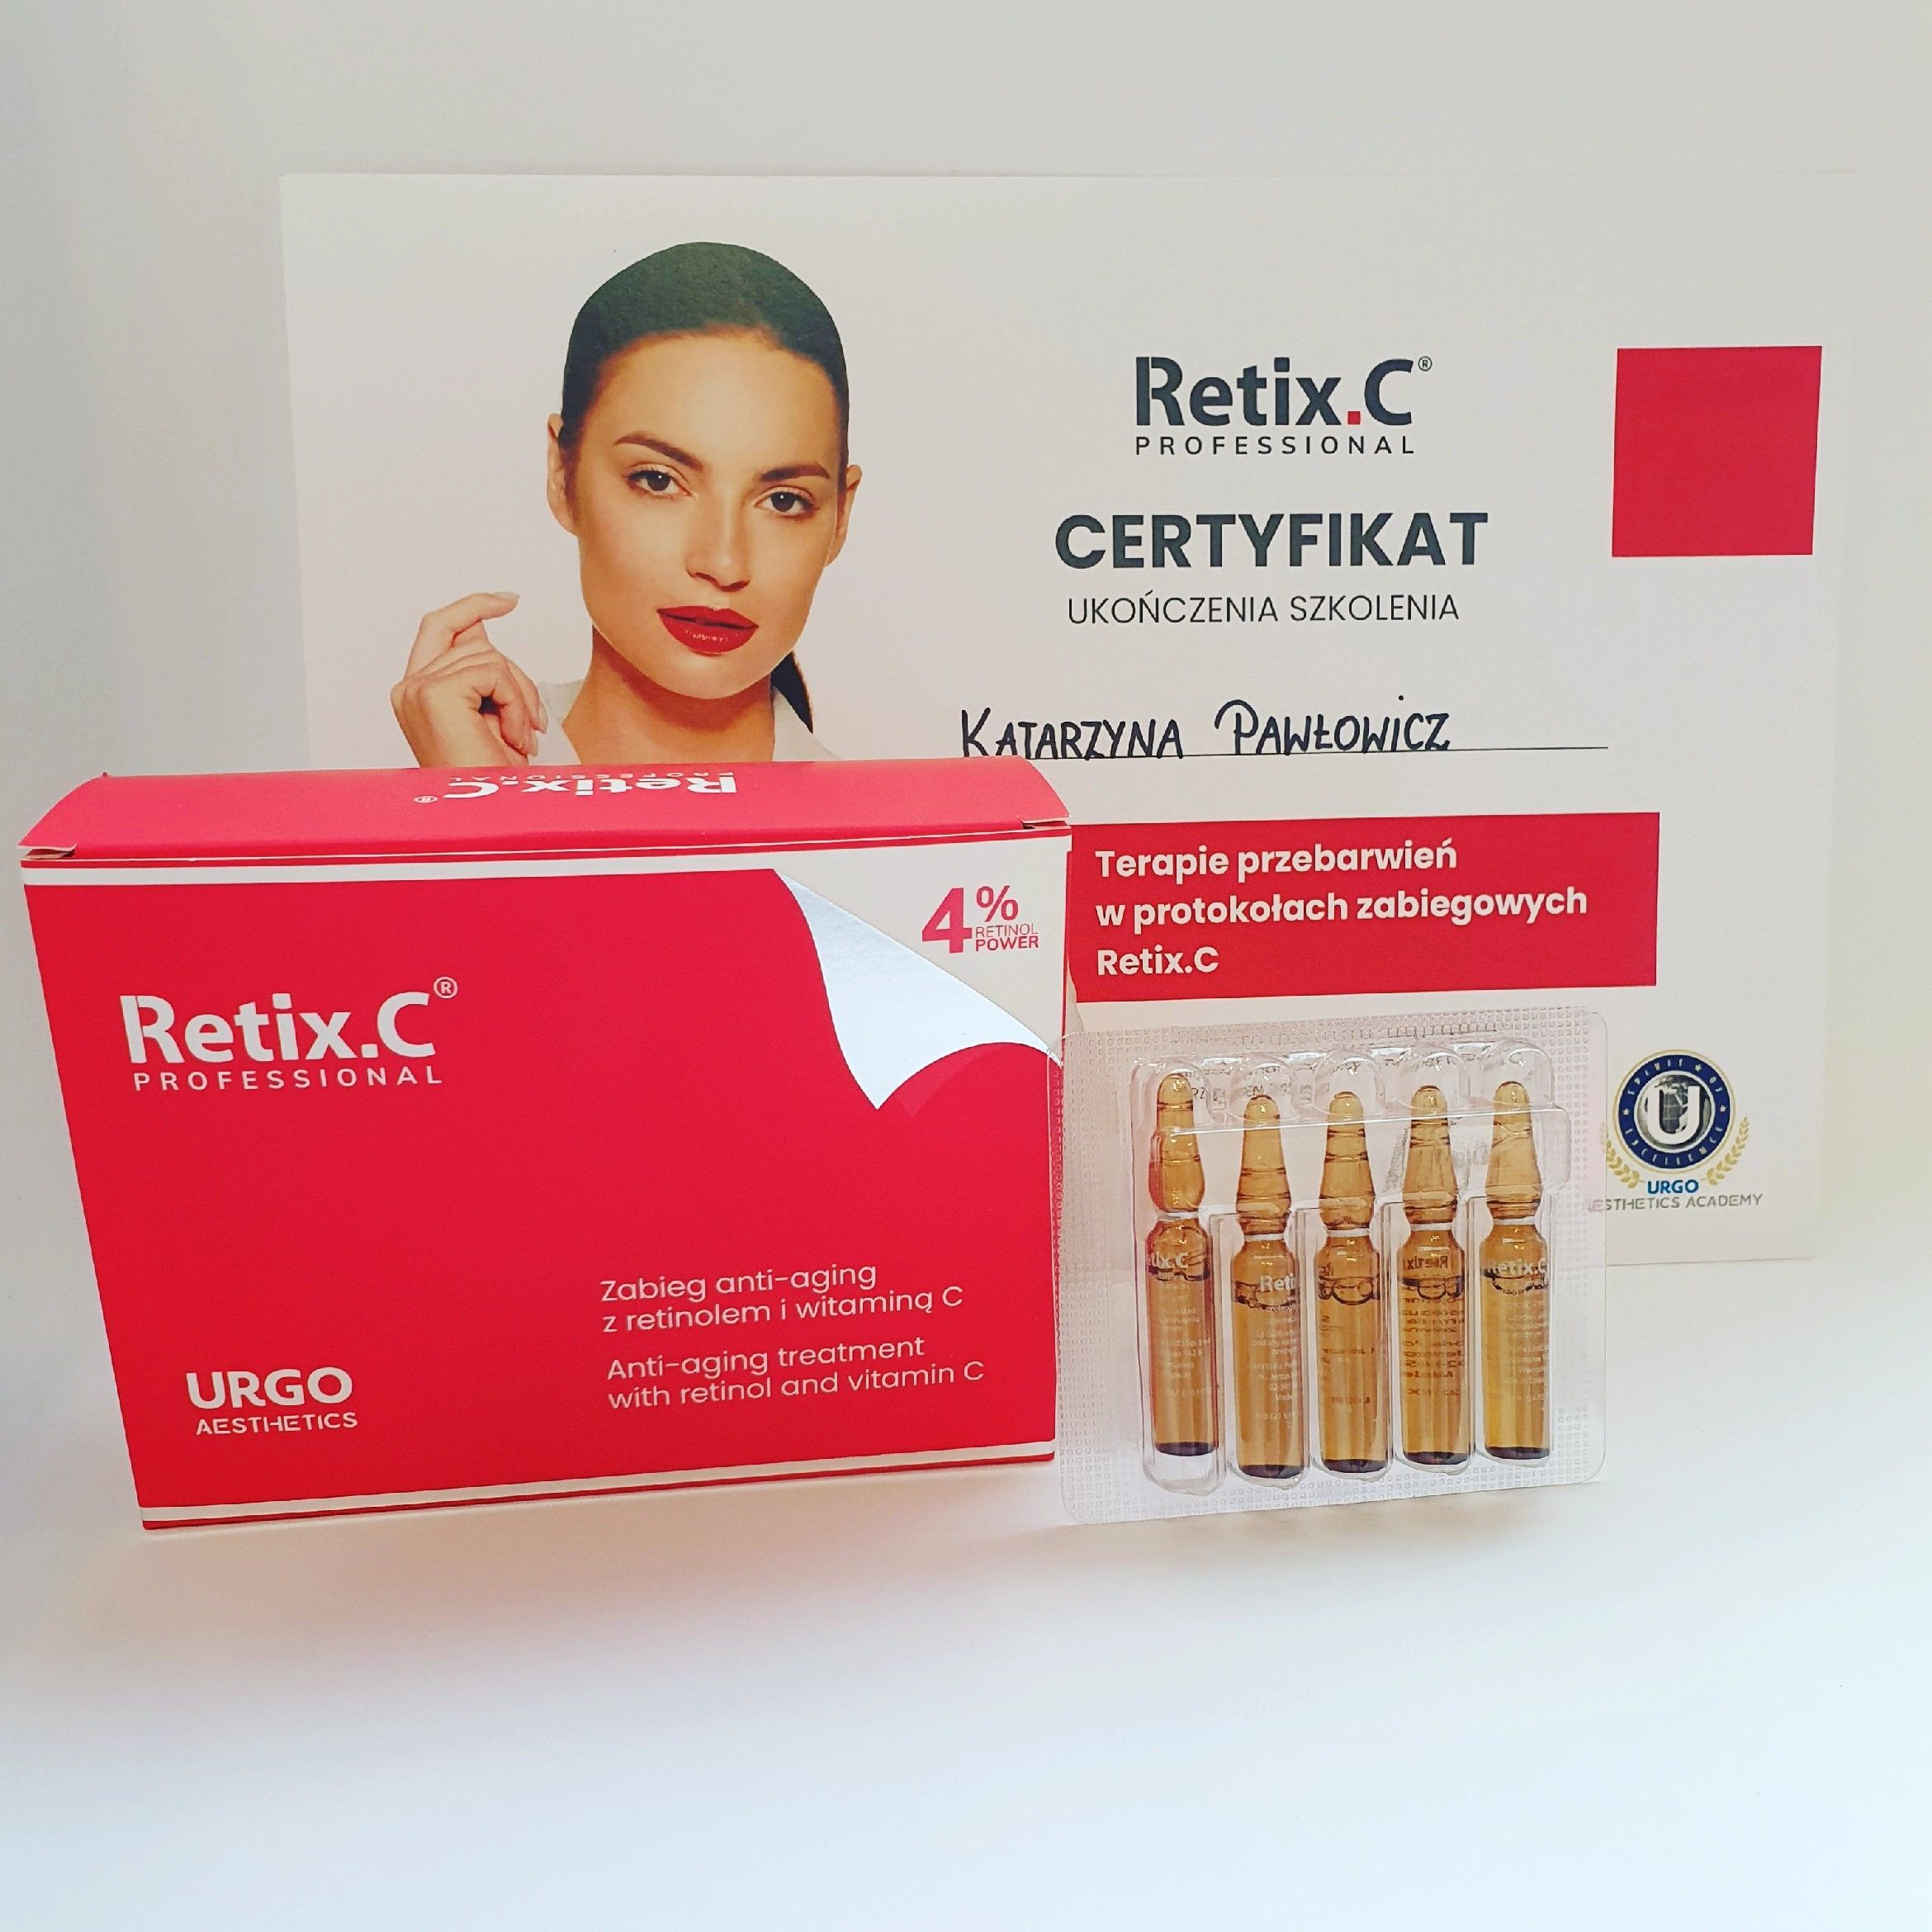 Portfolio usługi Retix C zabieg złuszczający, retinol i wit. C